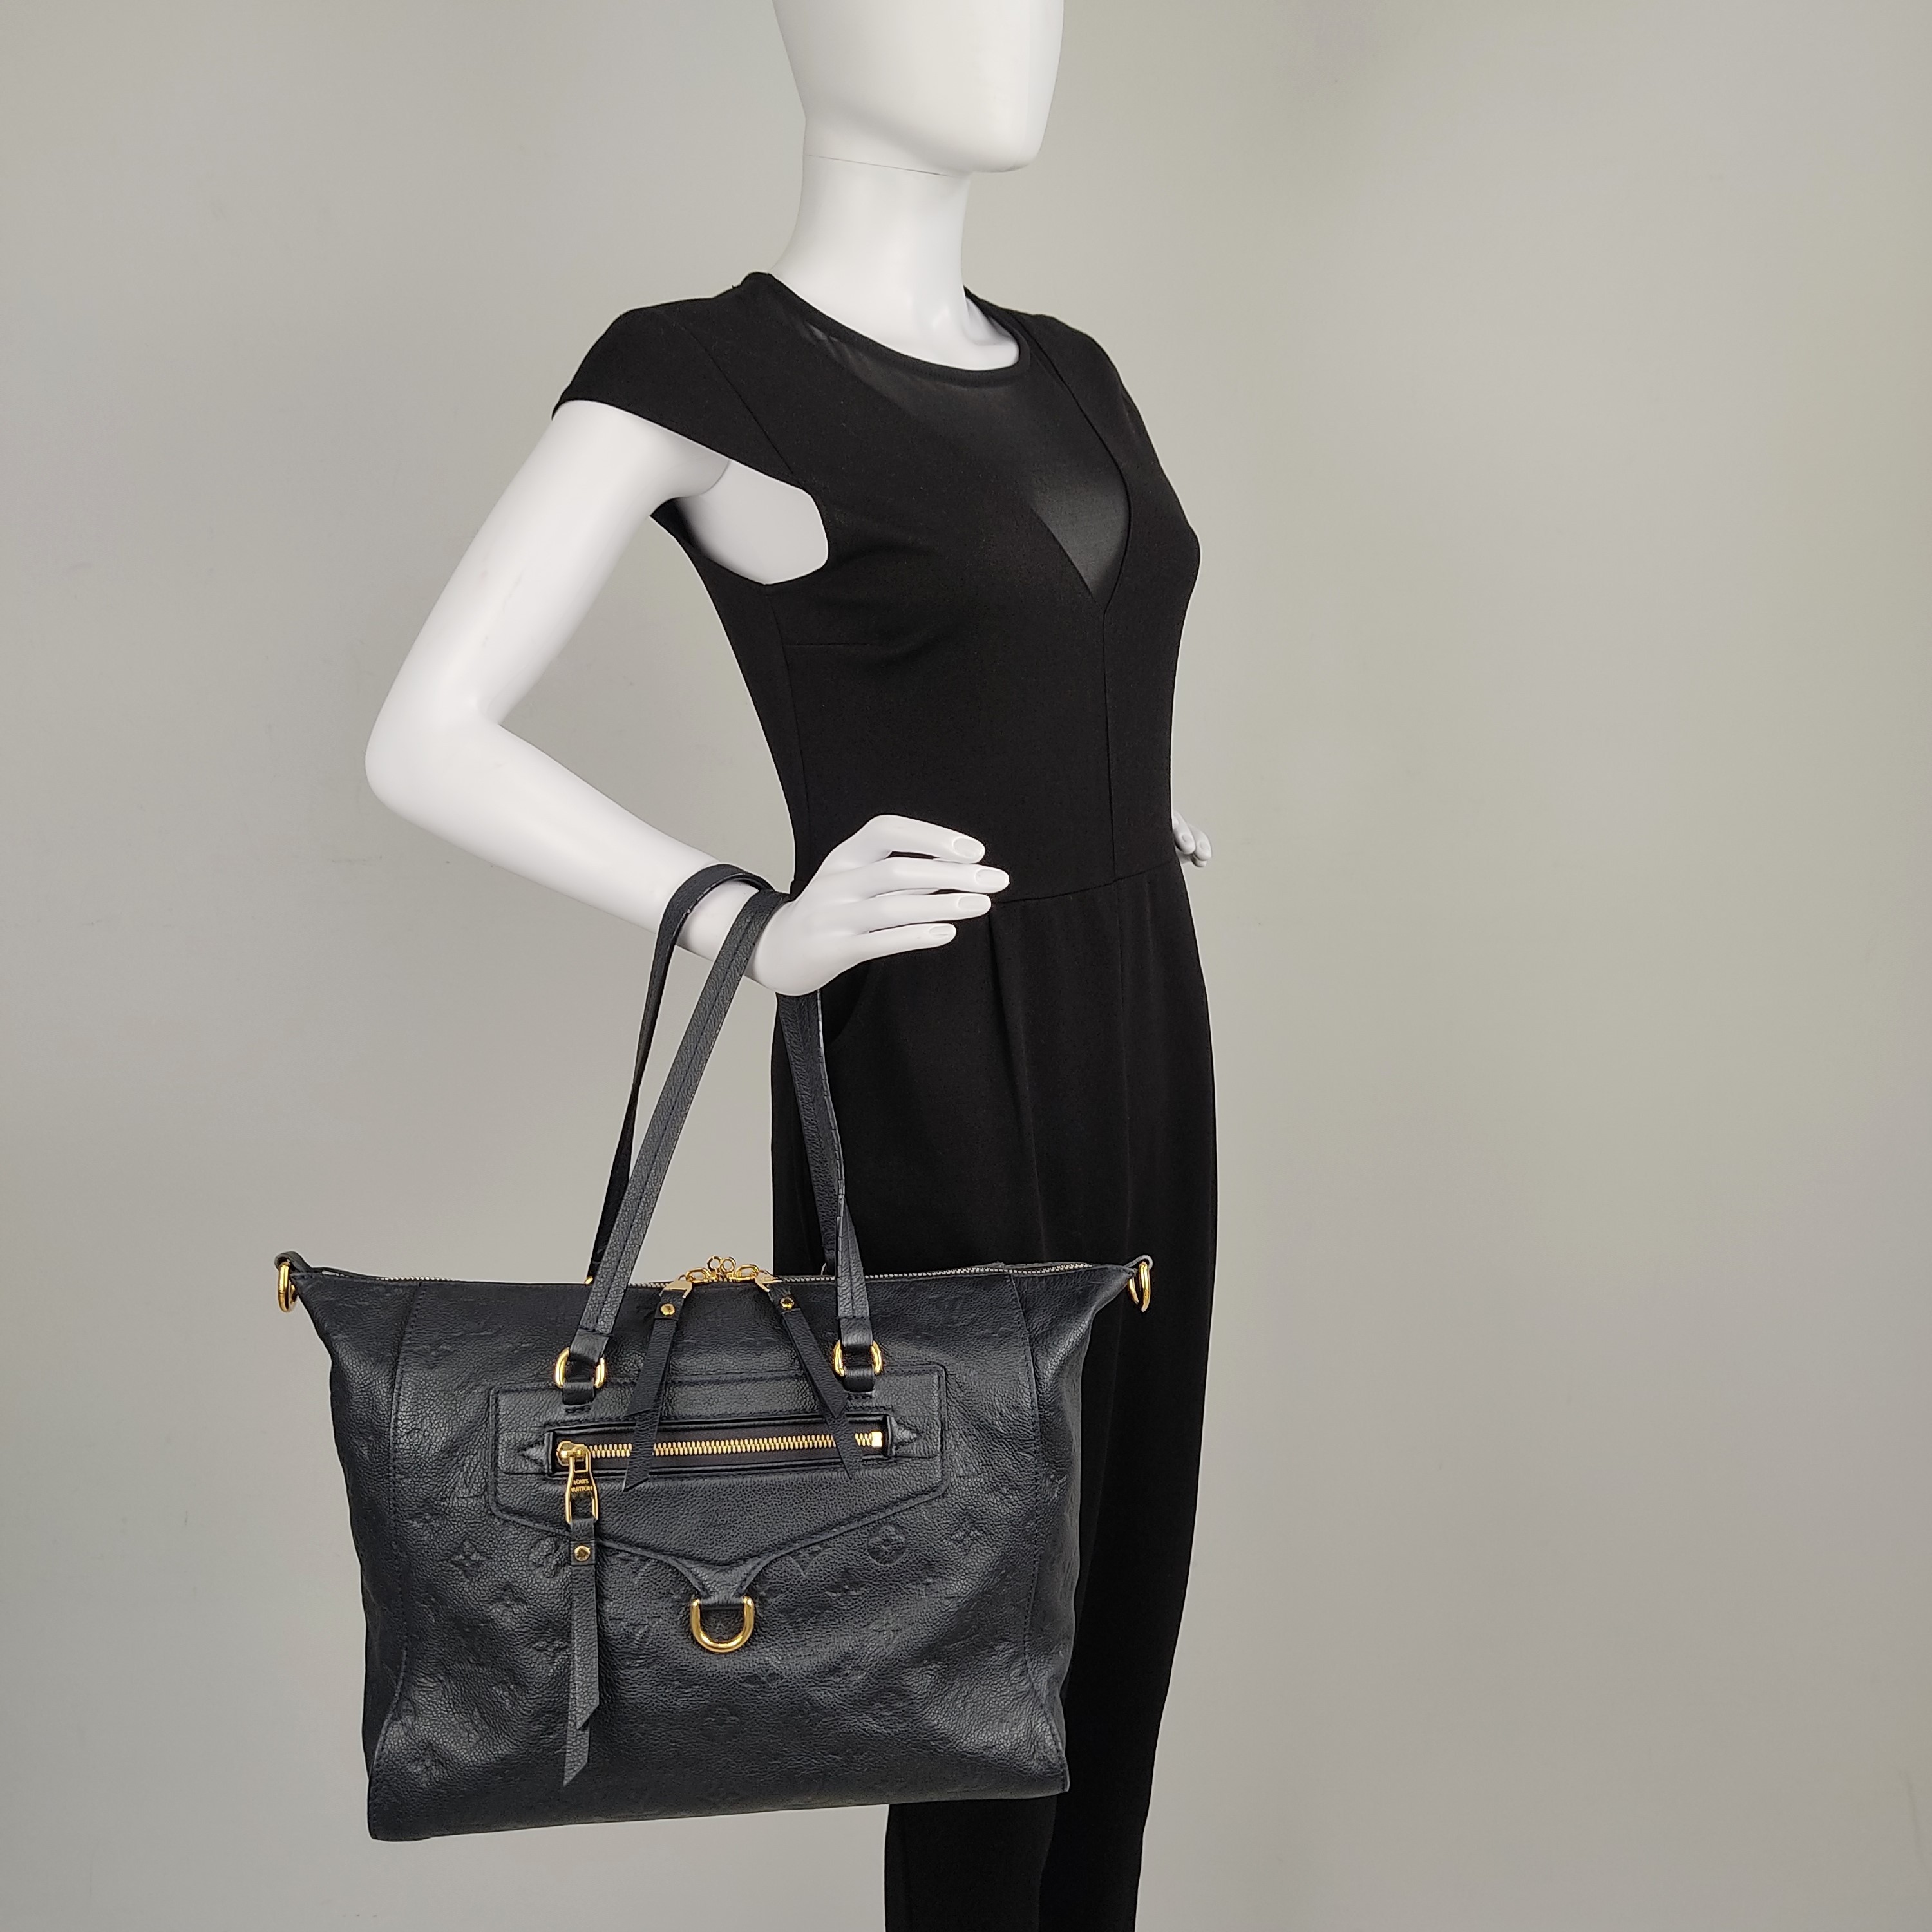 Louis Vuitton Lumineuse PM compared to Balenciaga City Handbag 